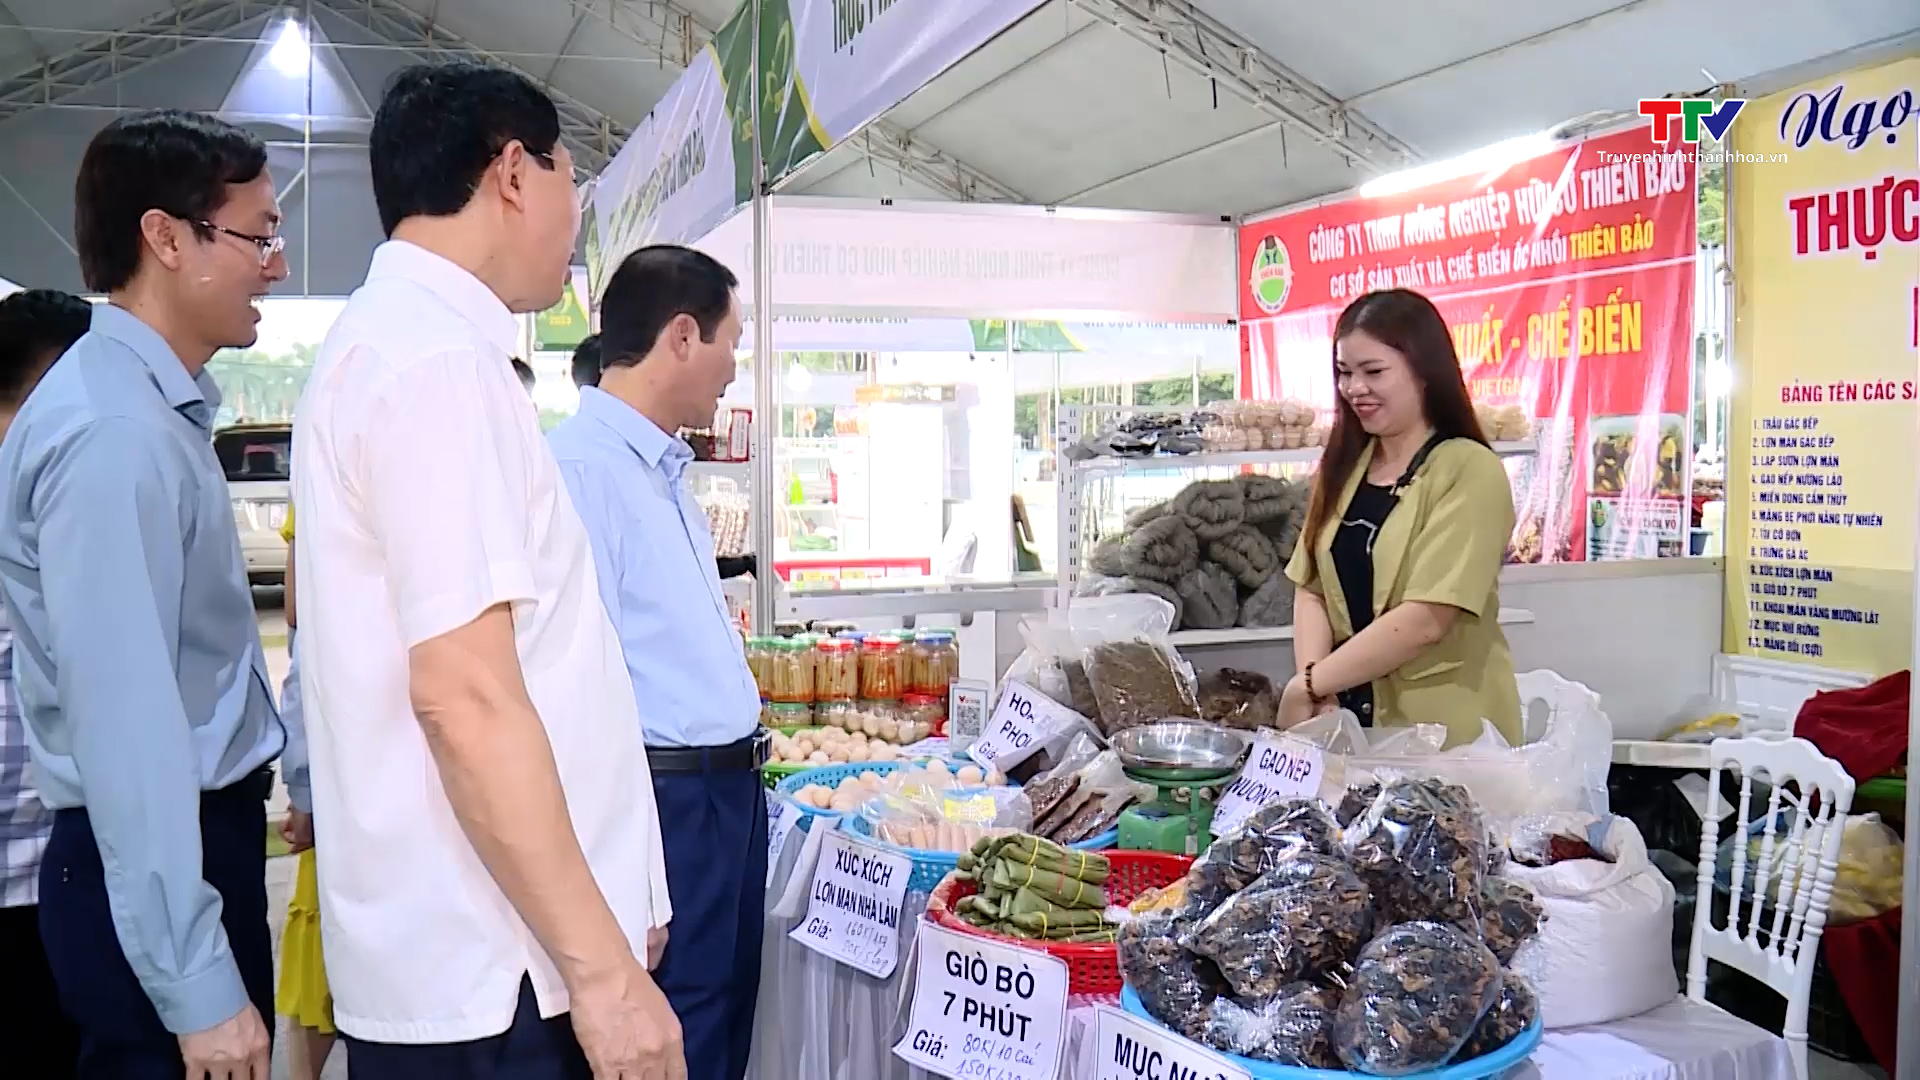 Hội nghị kết nối cung cầu và giới thiệu nông sản thực phẩm an toàn tỉnh Thanh Hóa sẵn sàng khai mạc  - Ảnh 2.